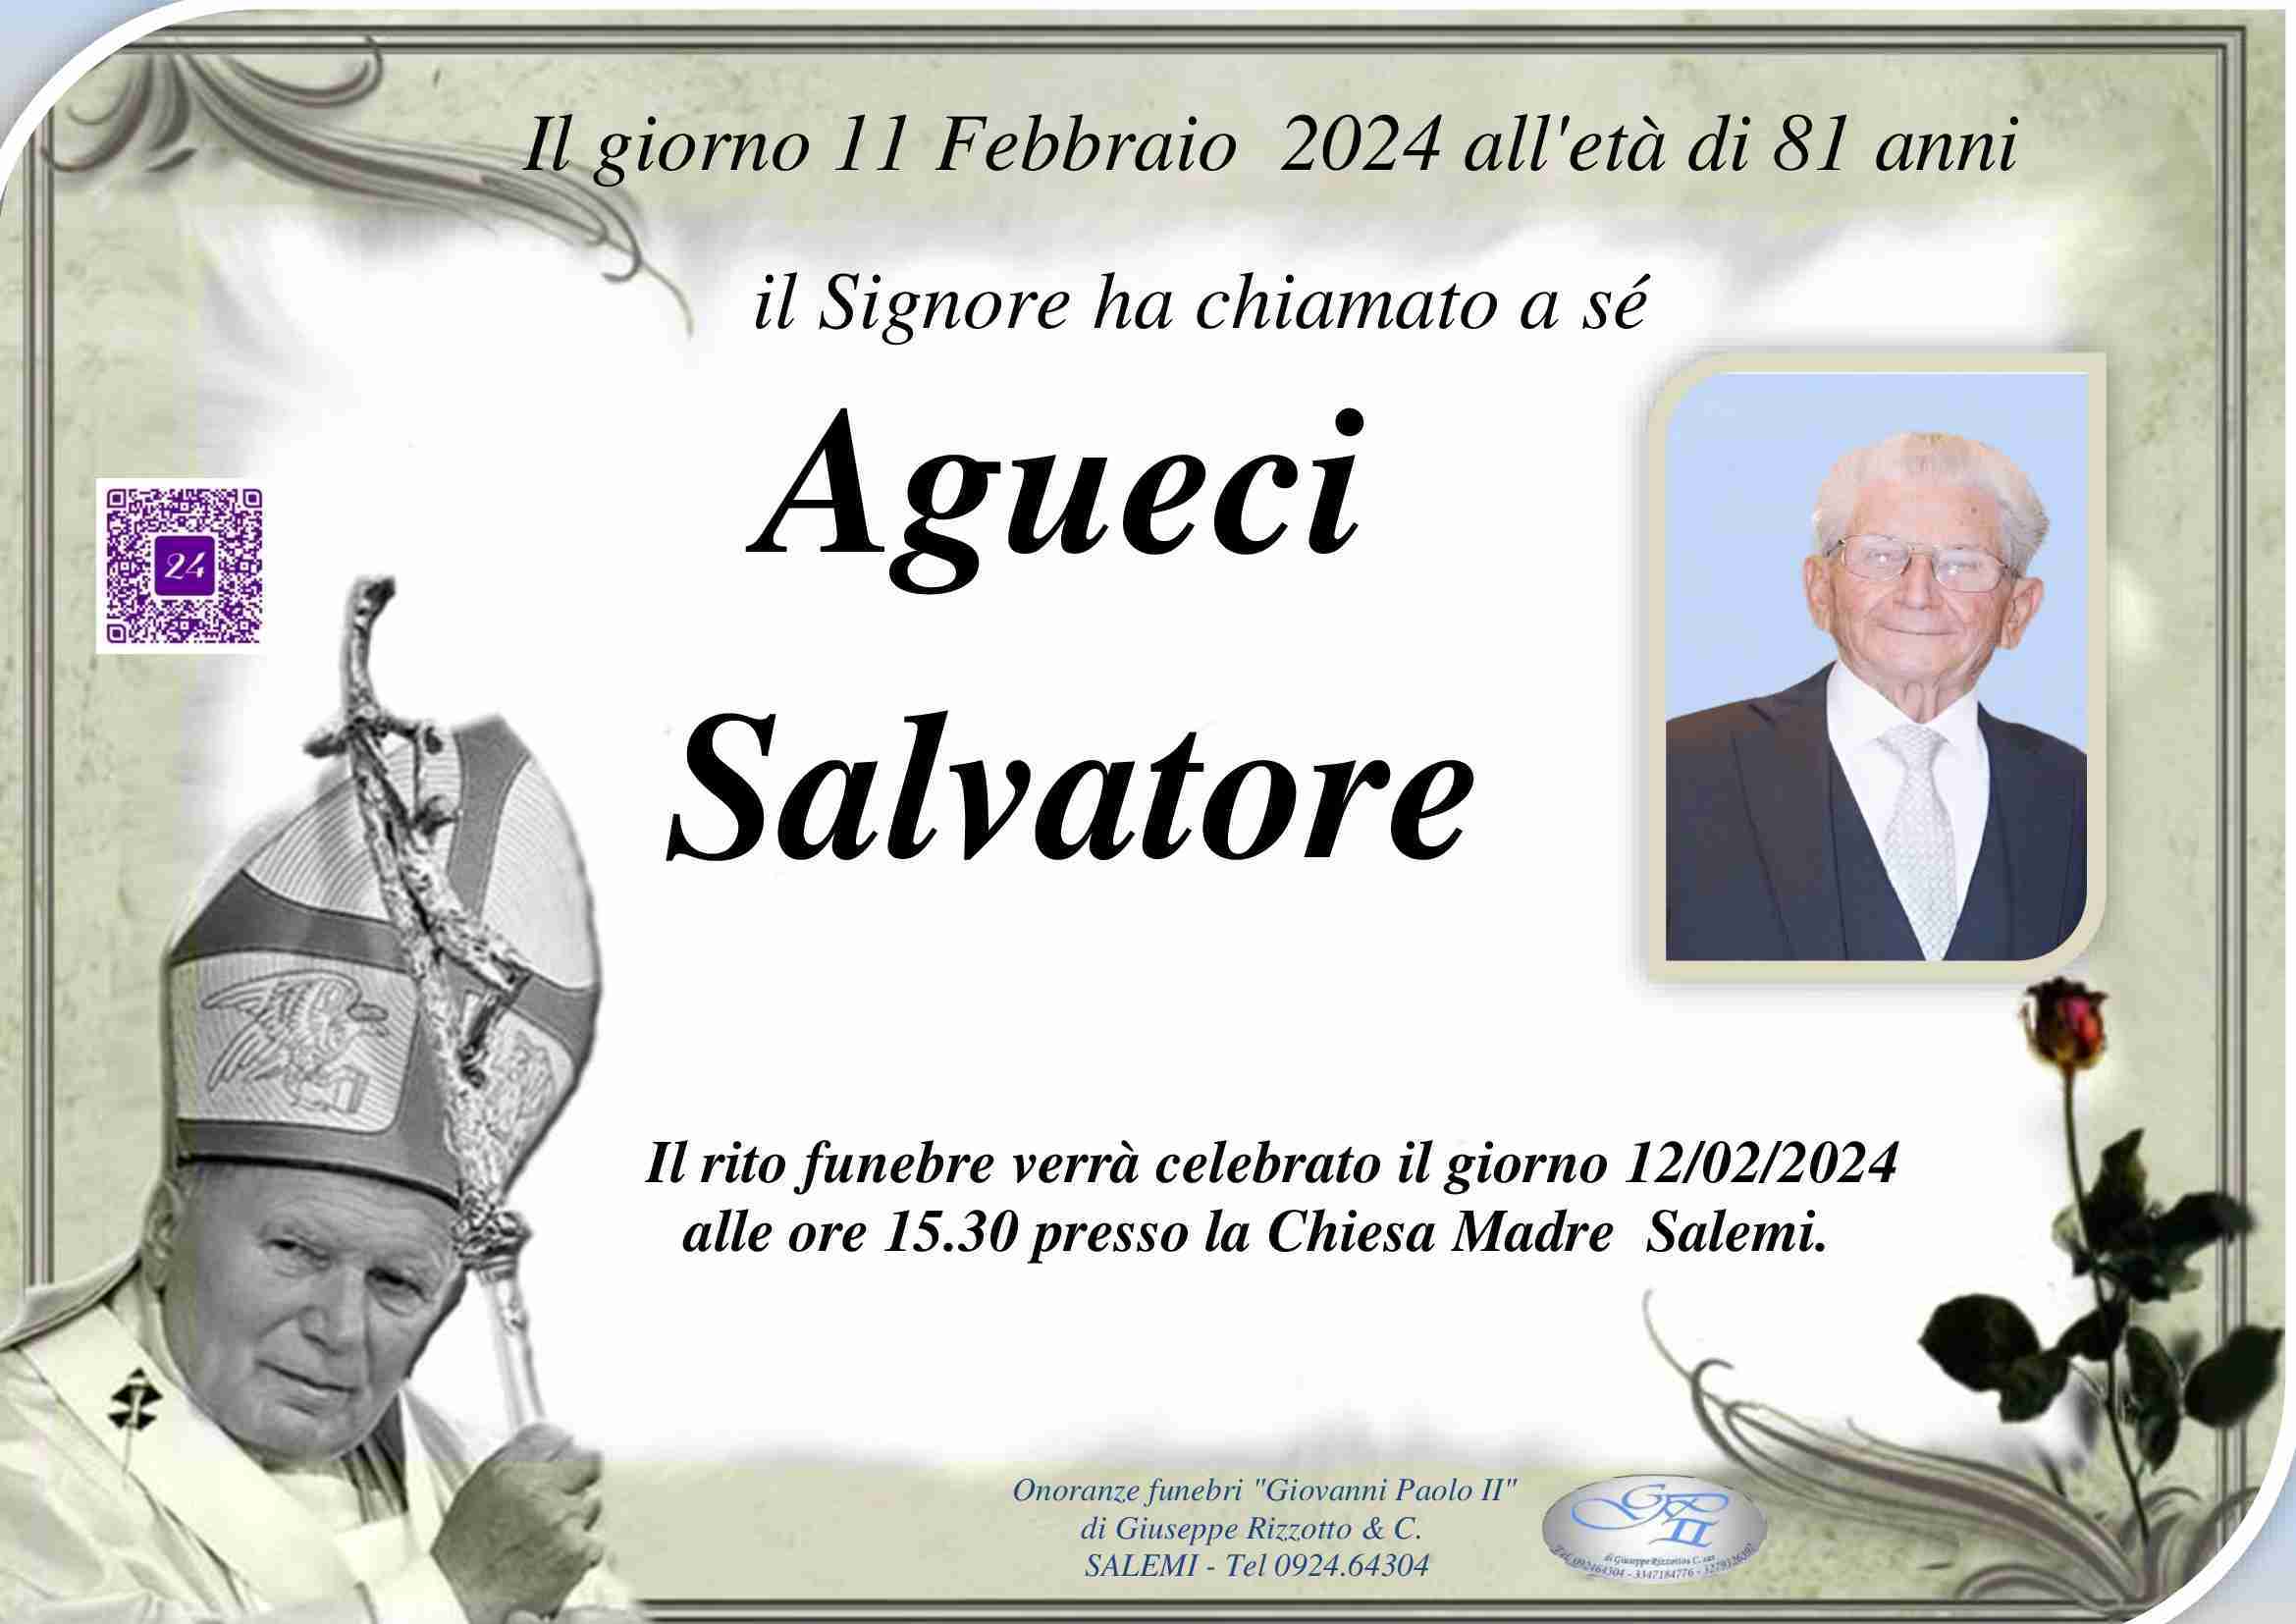 Salvatore Agueci